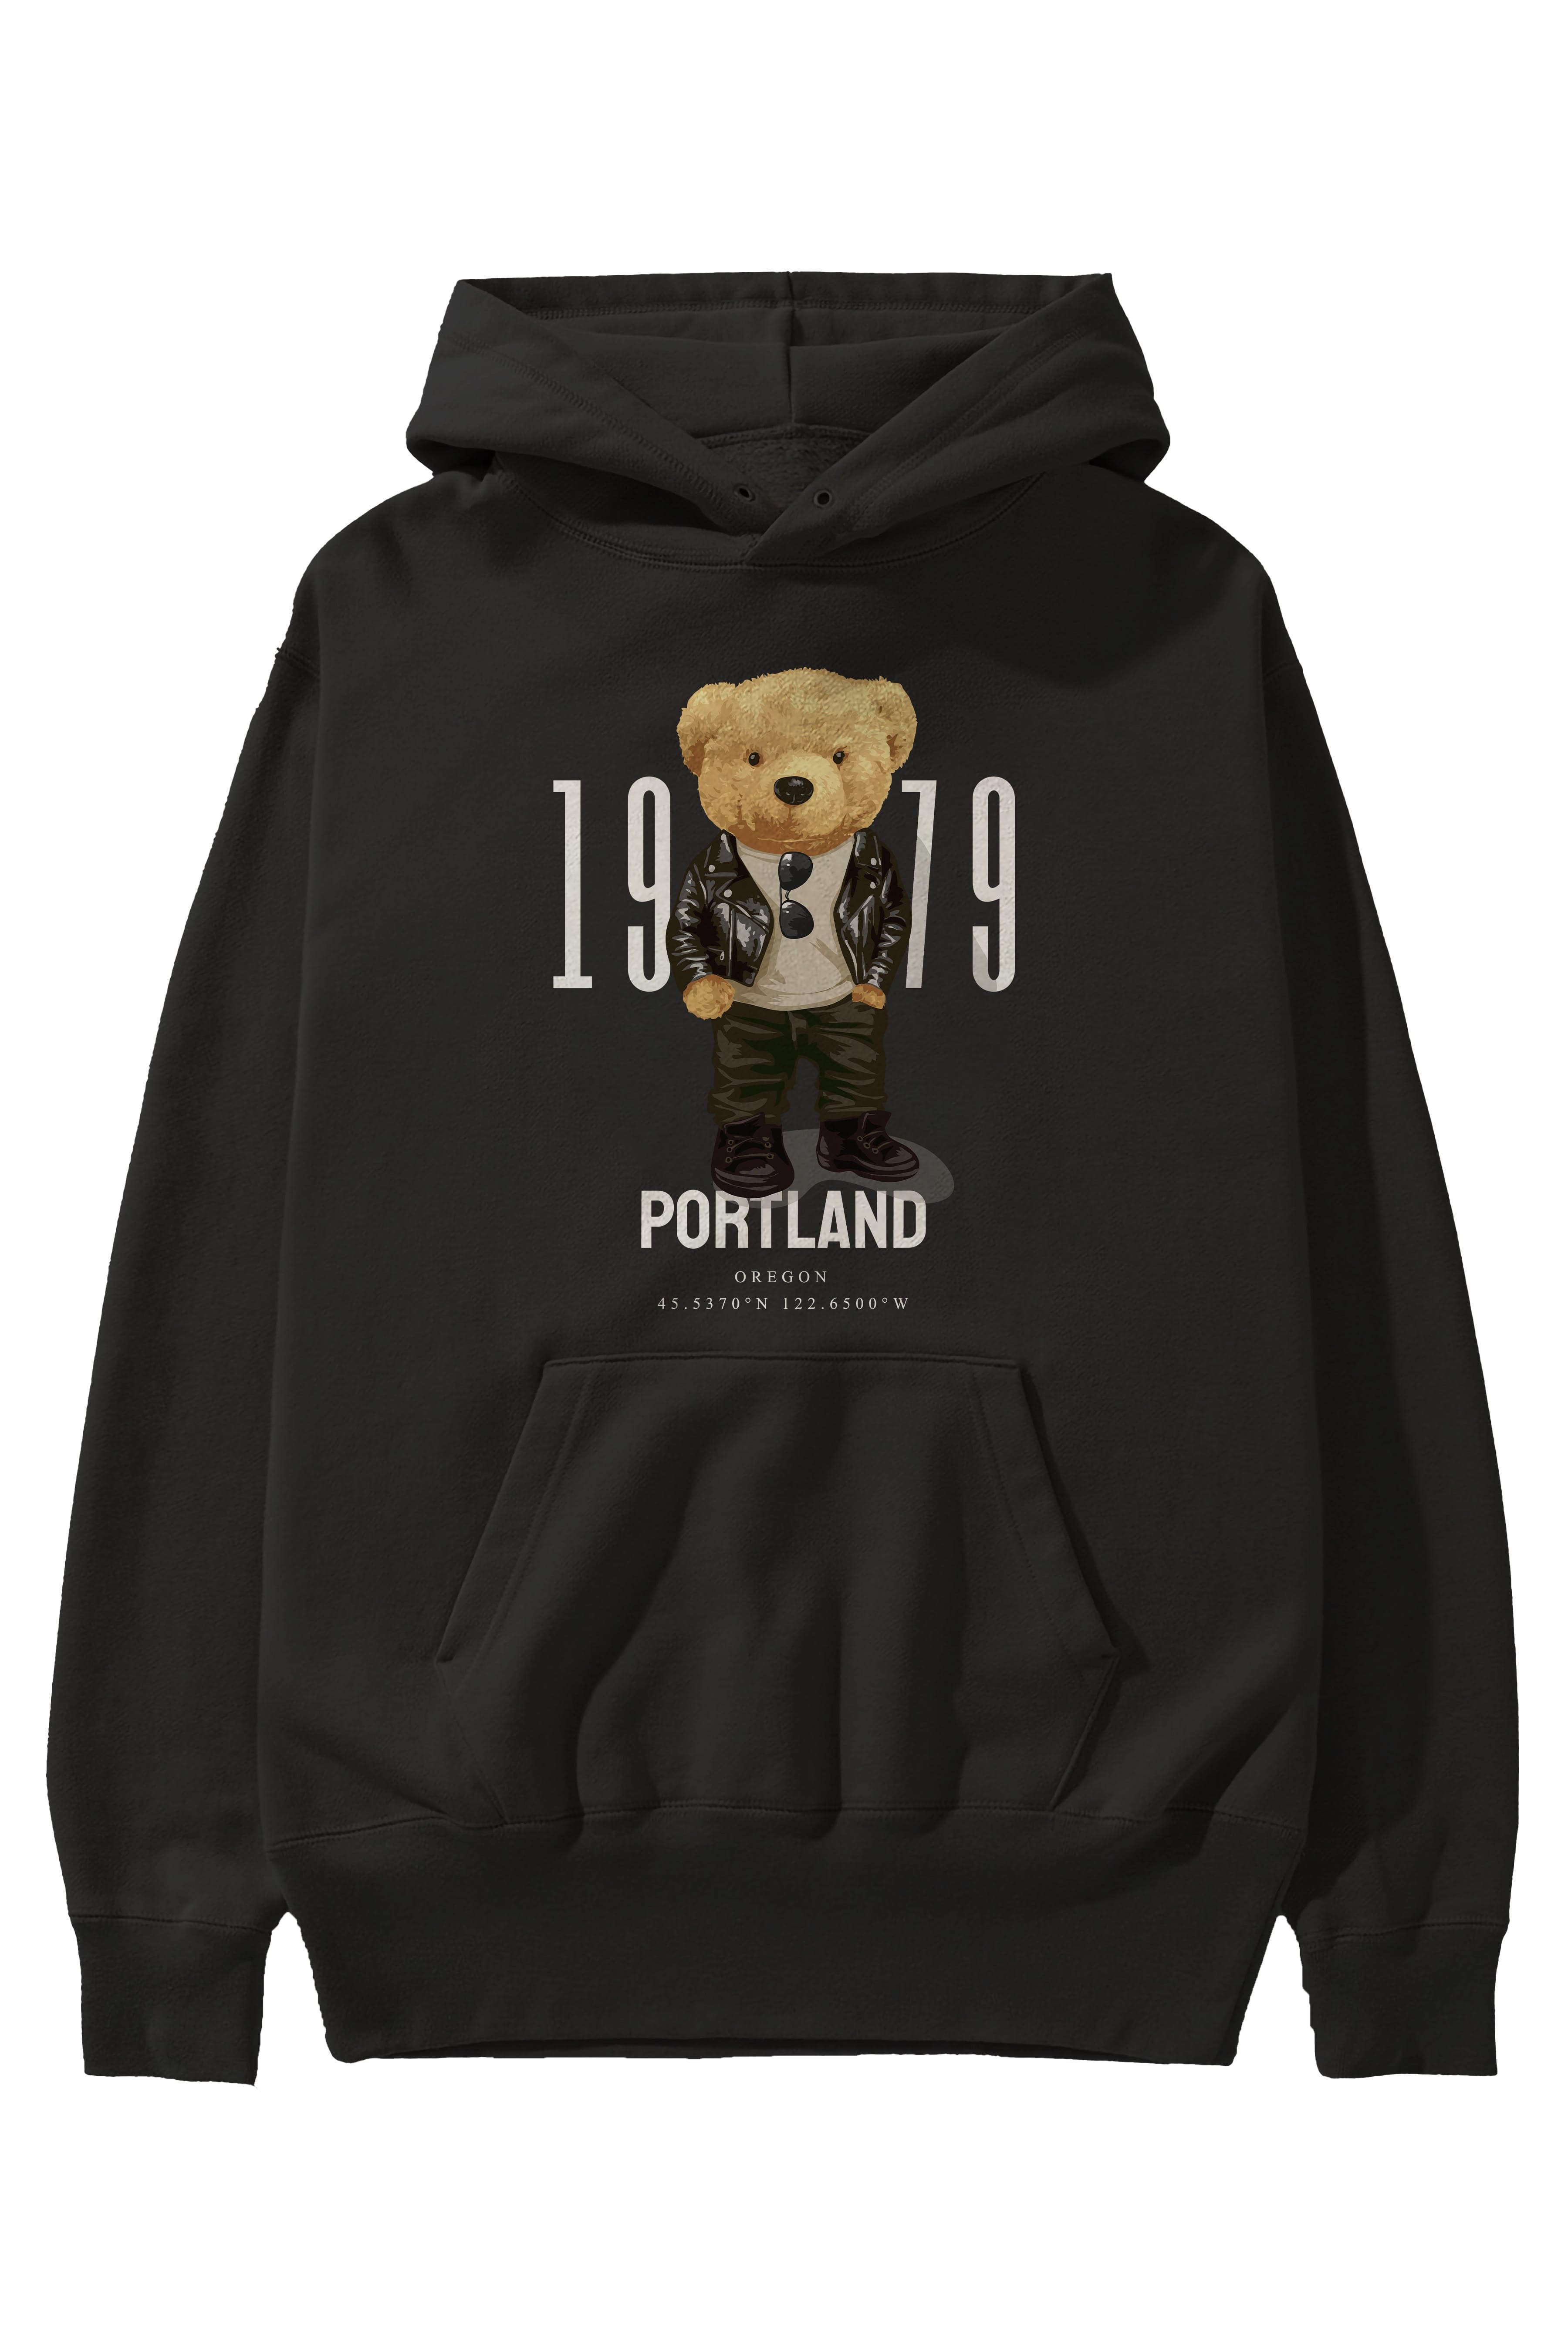 Teddy Bear Portland Ön Baskılı Hoodie Oversize Kapüşonlu Sweatshirt Erkek Kadın Unisex